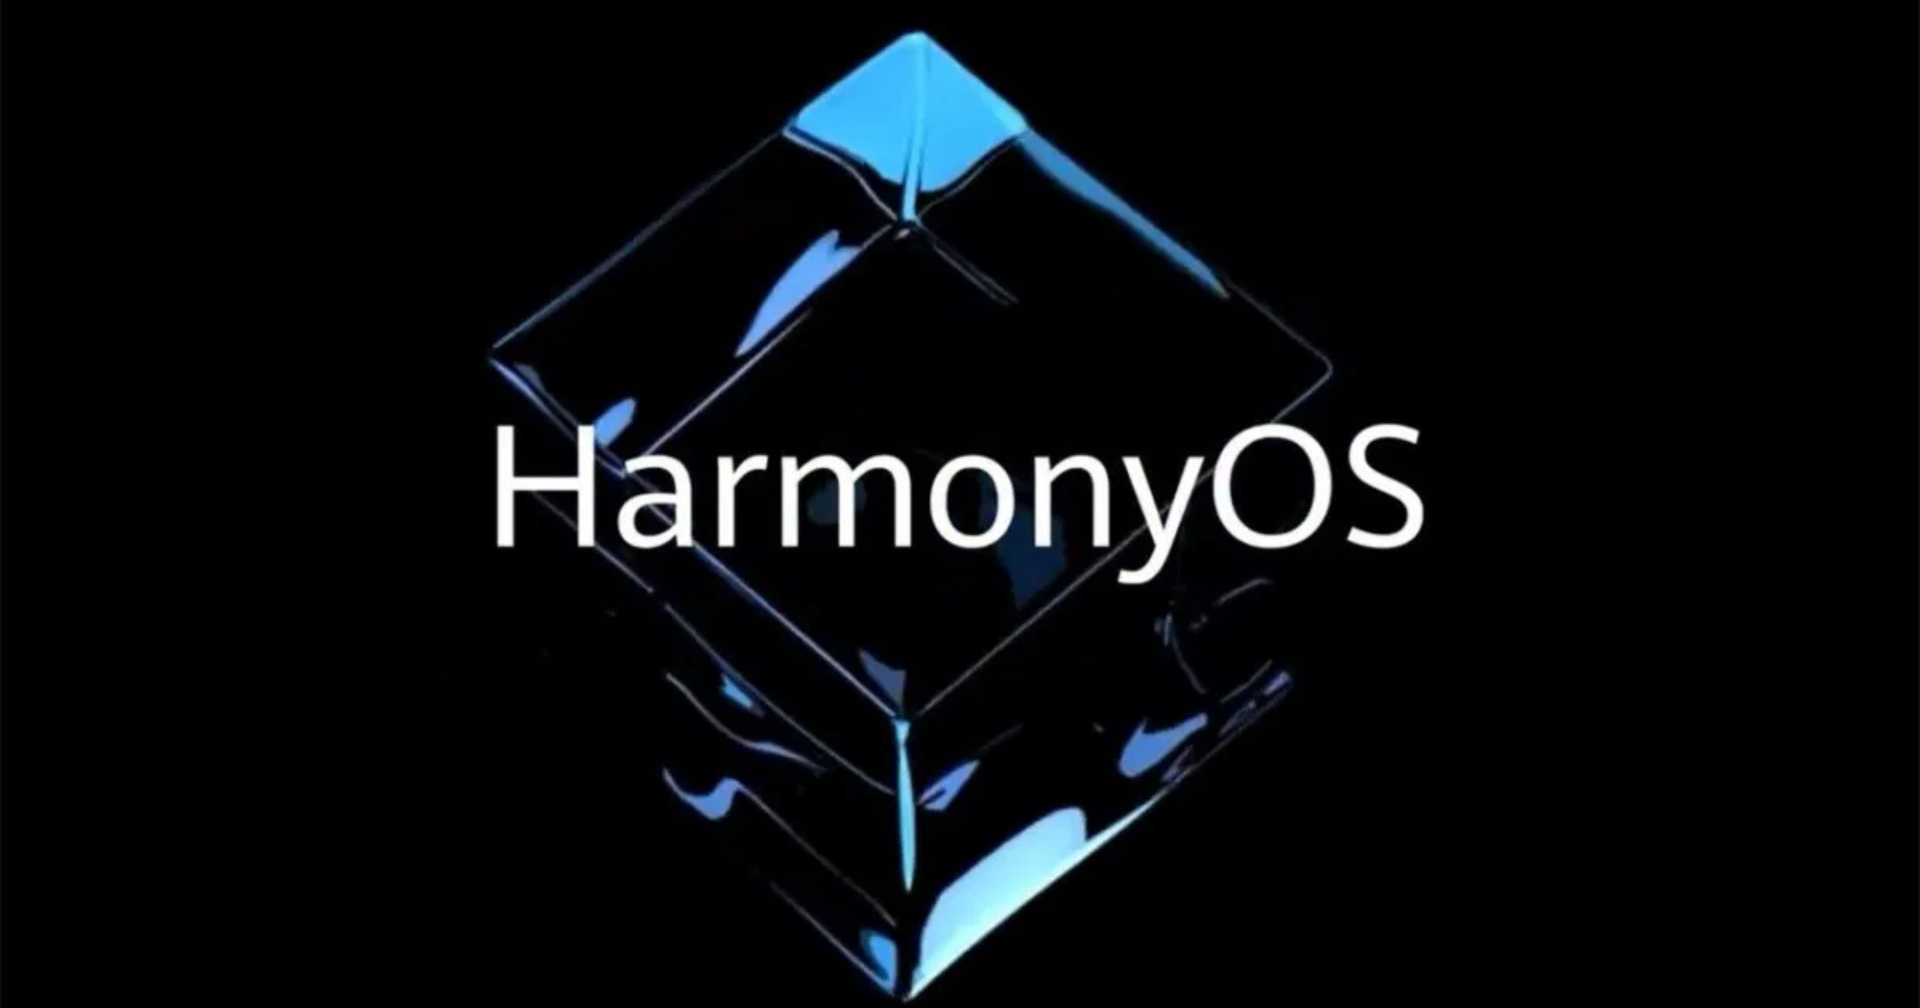 ลือ HarmonyOS จะพร้อมอัปเดตชุดใหญ่เดือนมิถุนายนนี้!